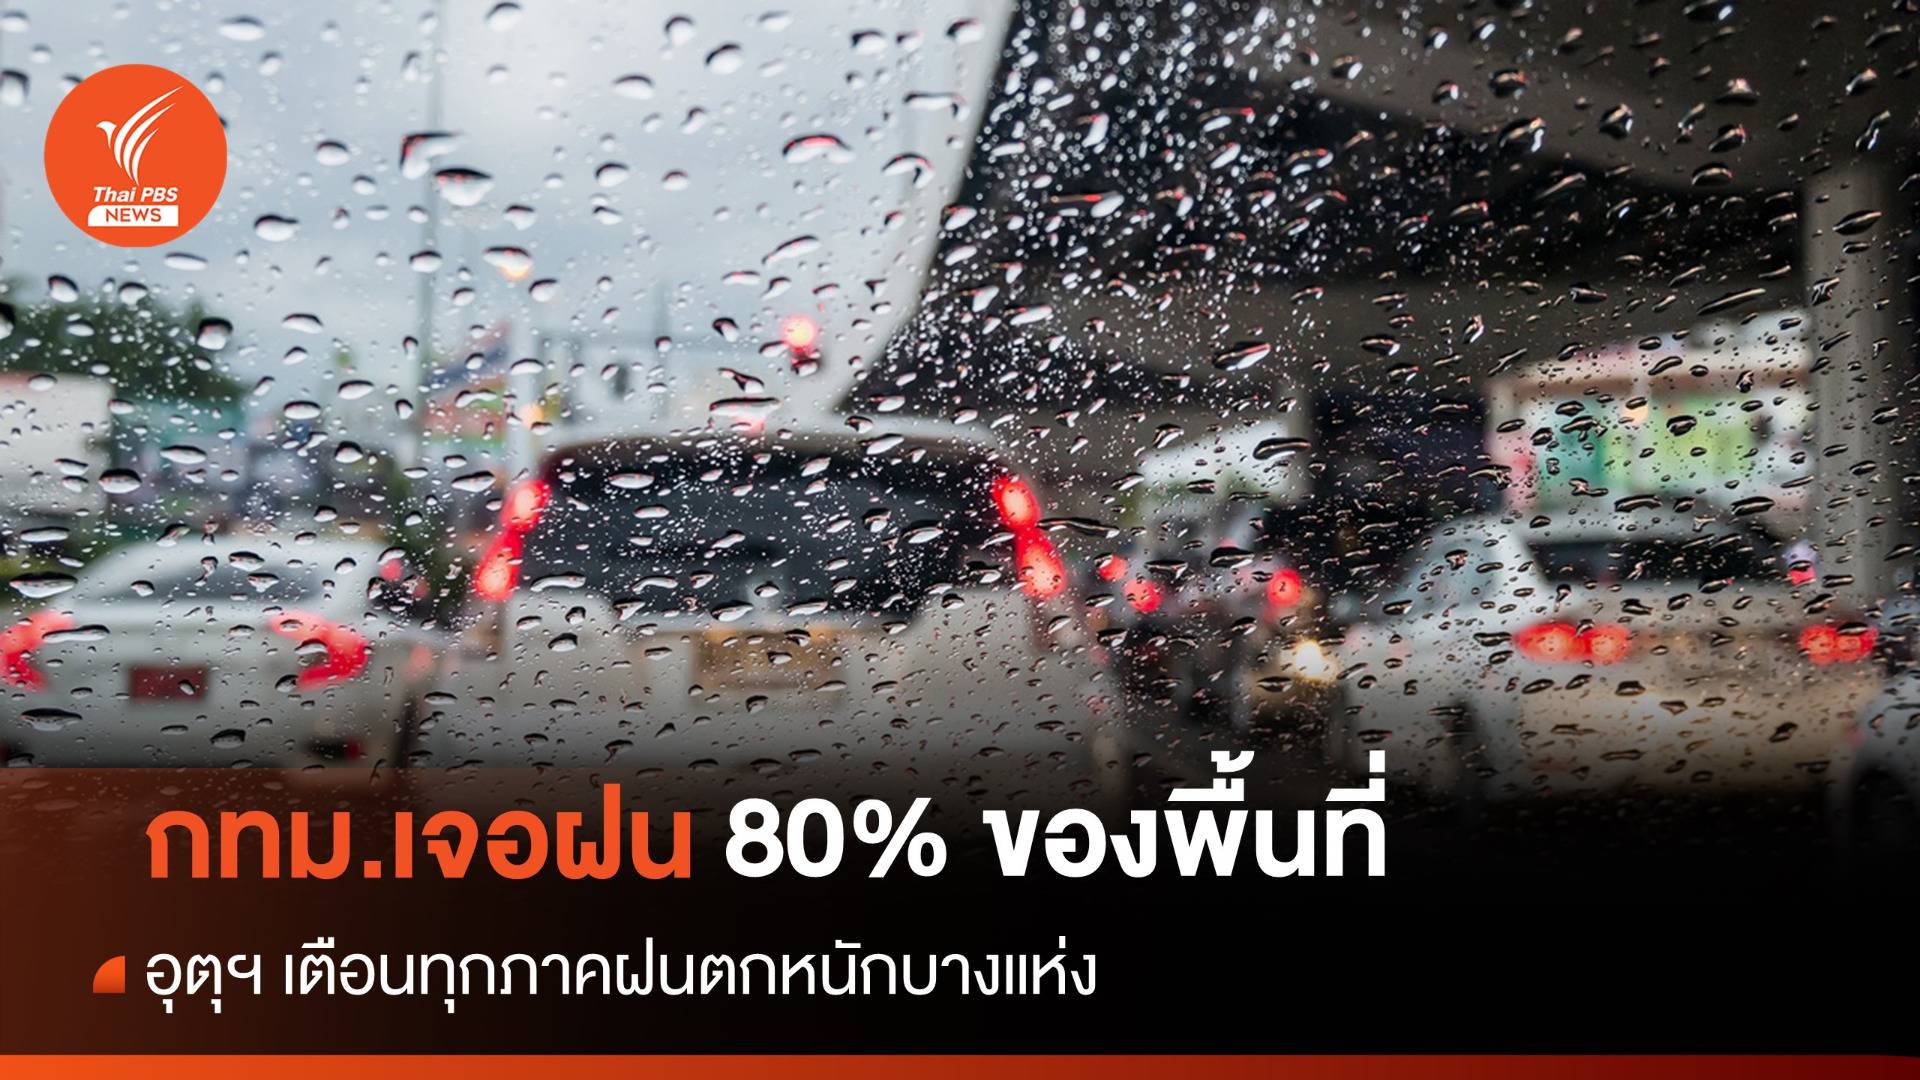 สภาพอากาศวันนี้ ทั่วไทยฝนตกหนัก "ภาคกลาง-ตะวันออก" 80% ของพื้นที่